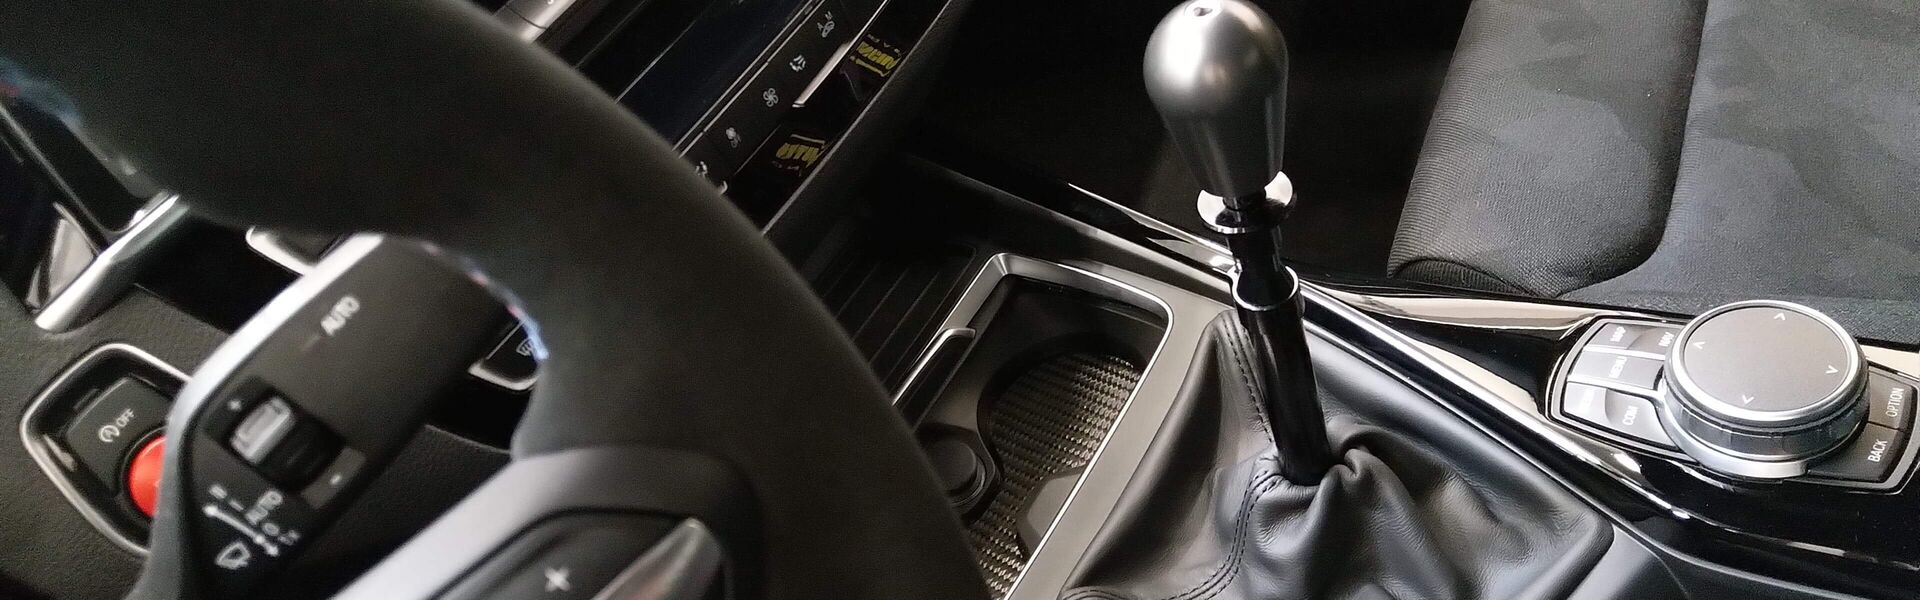 Převodovka/Řazení  pro automobil BMW M3 E36